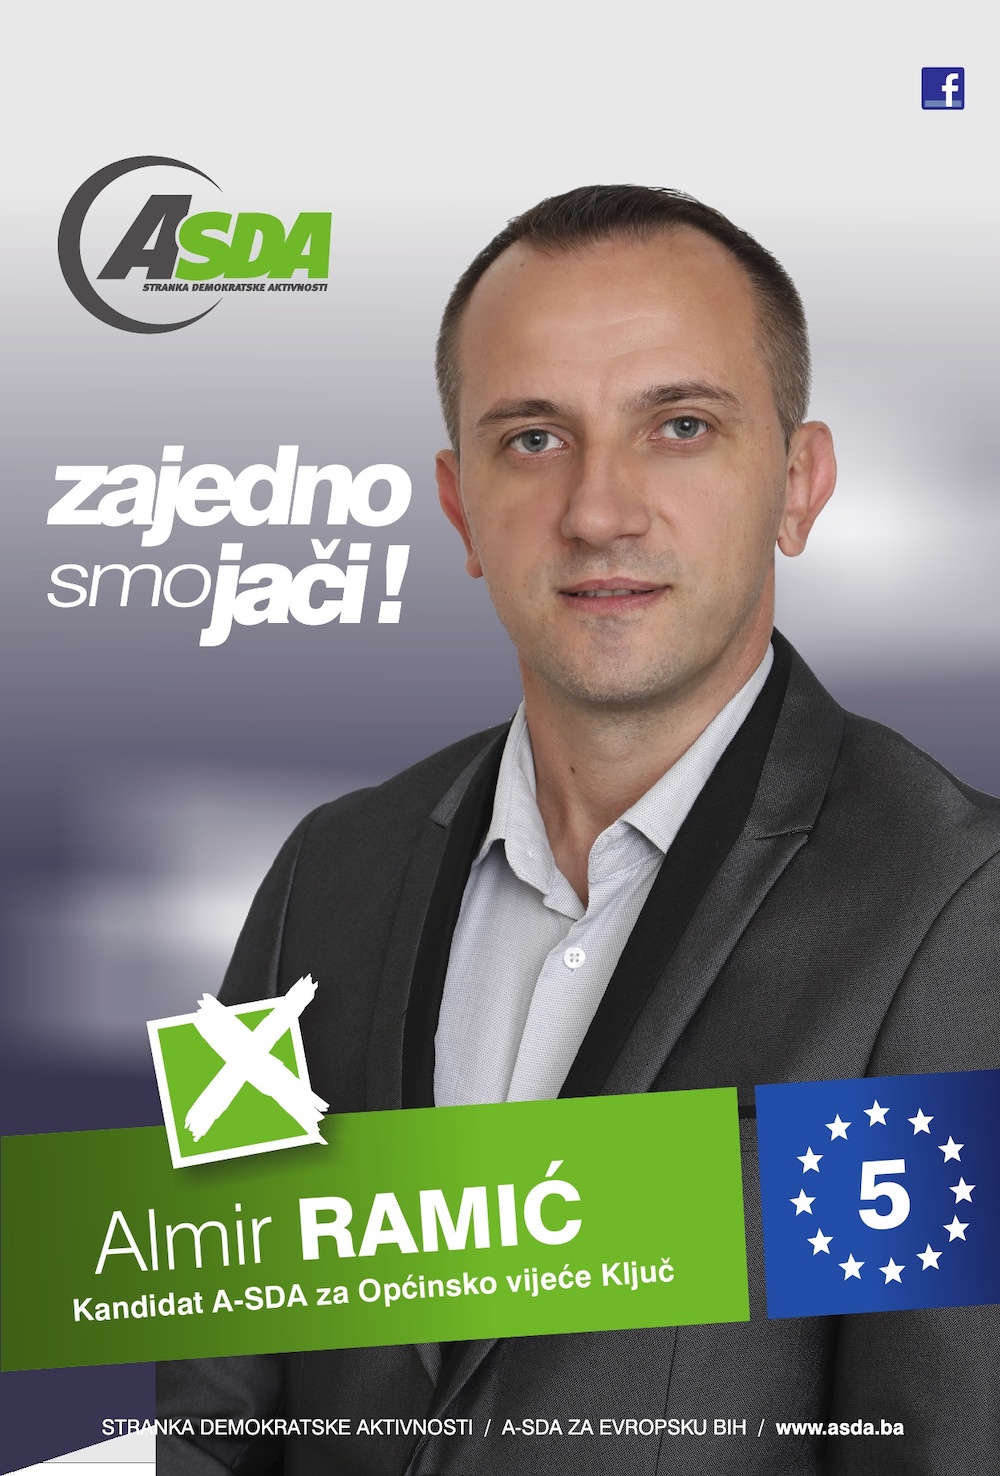 Almir Ramić